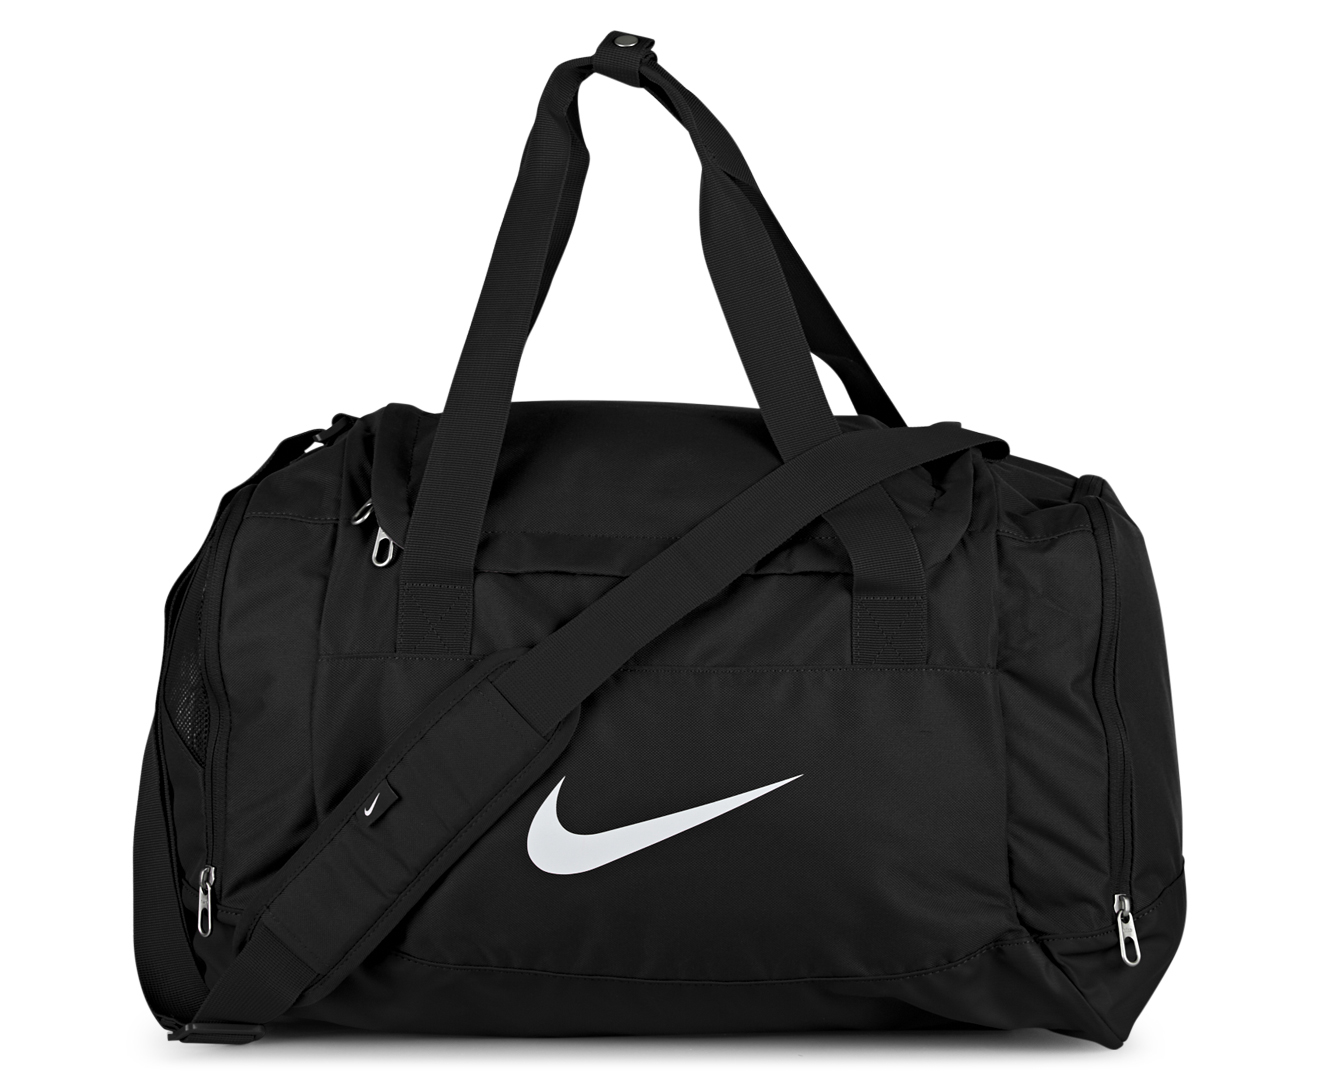 Черная спортивная сумка. Сумка Nike db3818-068. Nike сумка Swoosh White. Nike Swoosh Bag Black. Nike Swoosh сумка серая.